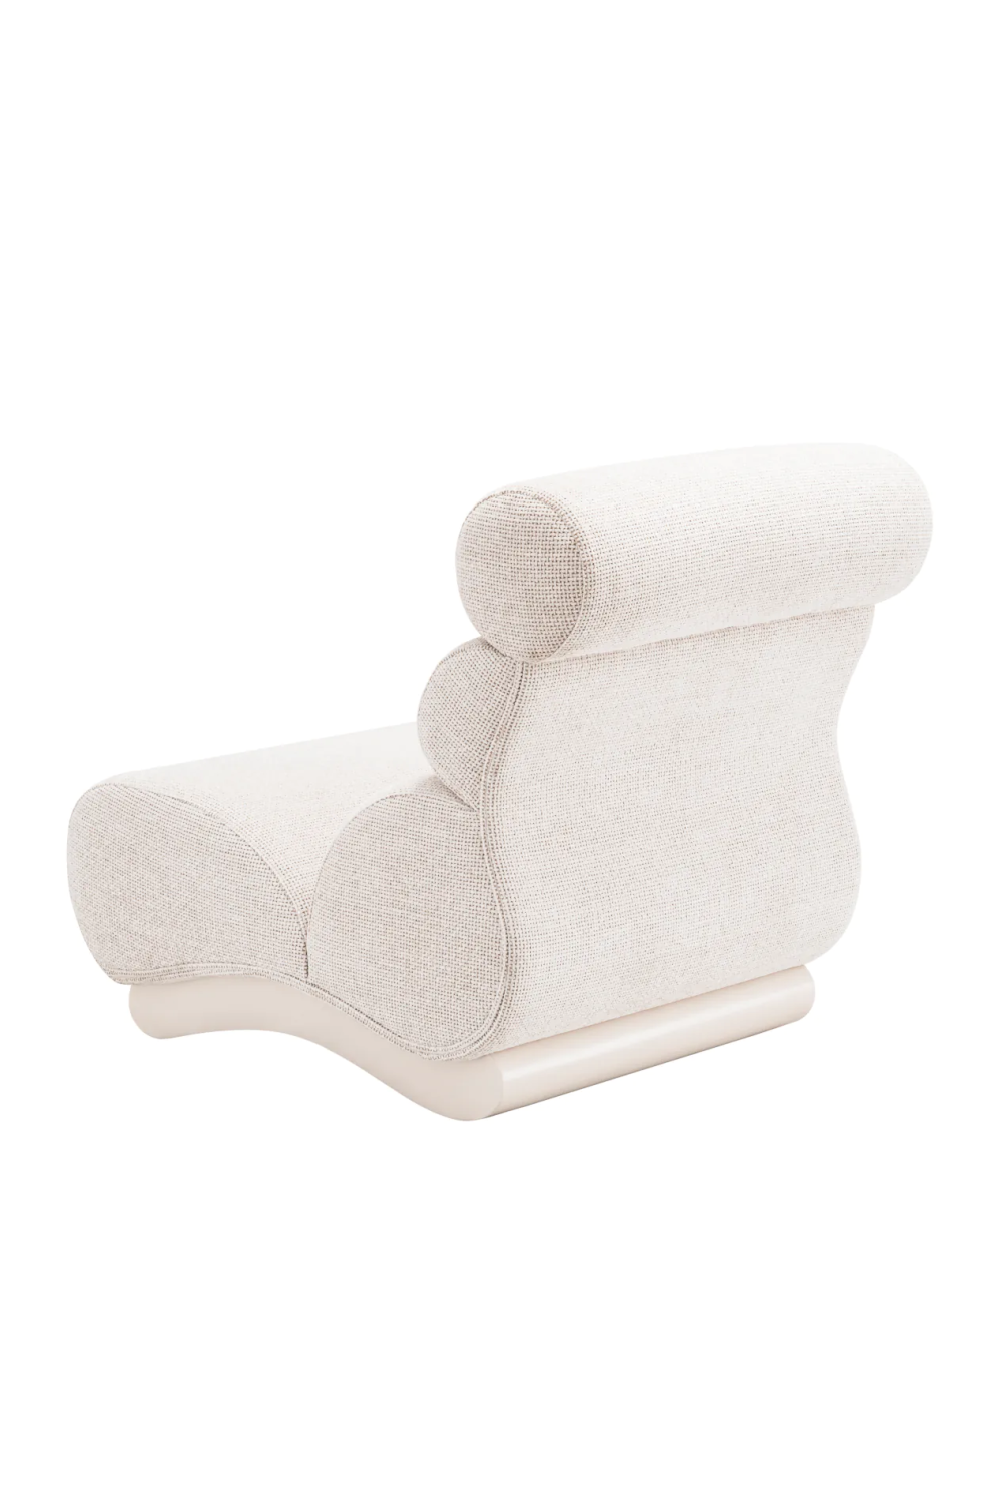 Off-White Modern Lounge Chair | Eichholtz Congreso | Oroa.com